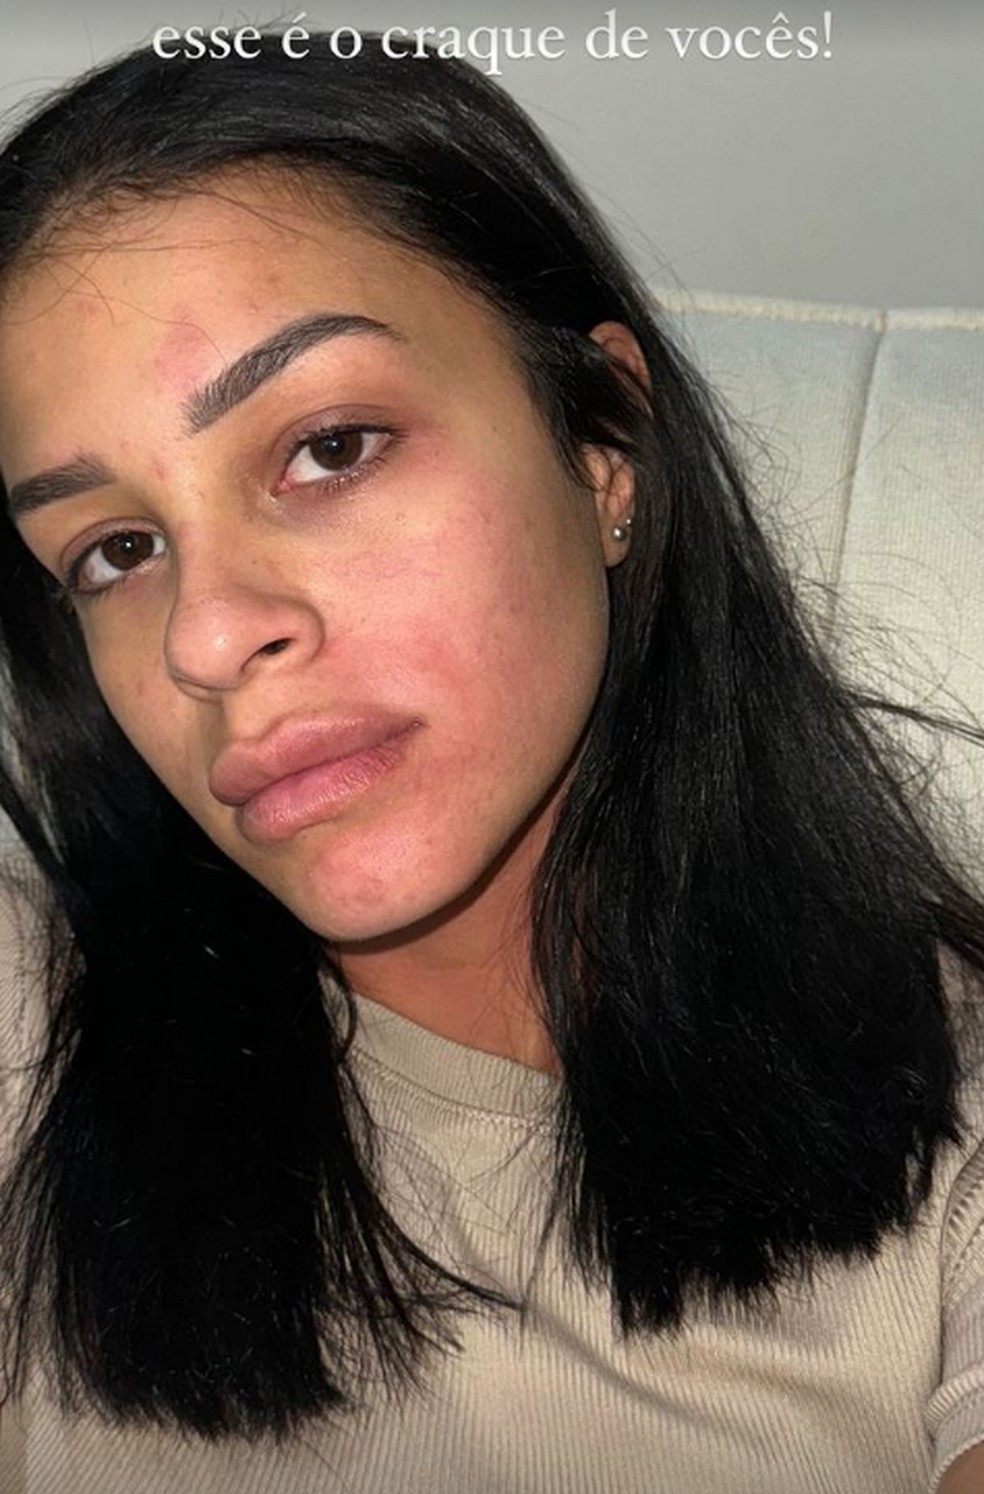 Isabella publicou fotos do rosto machucado nas redes sociais — Foto: Reprodução